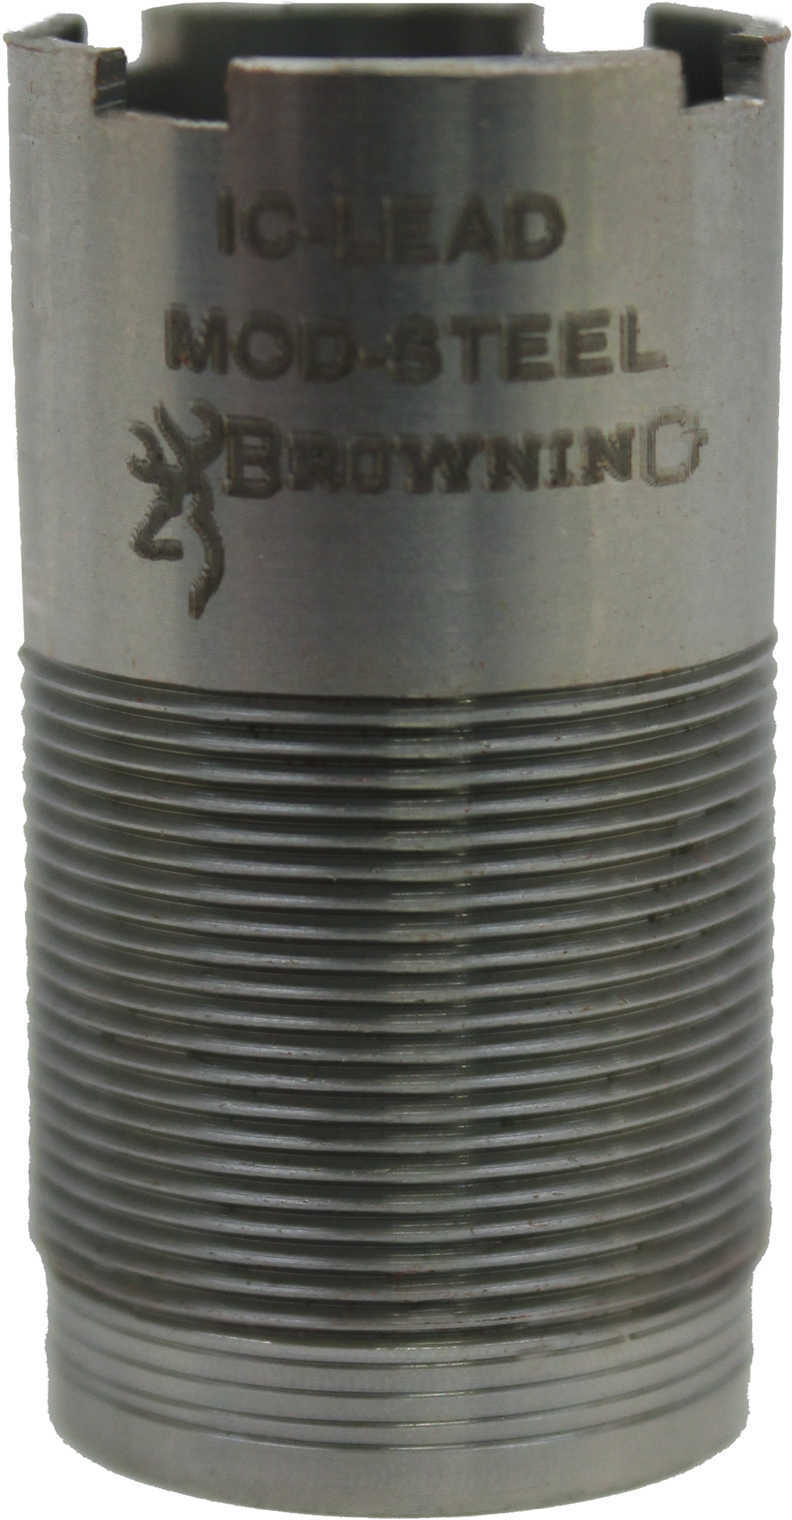 Browning Invector Choke Tube 12 Gauge Improved Cylinder 1130283